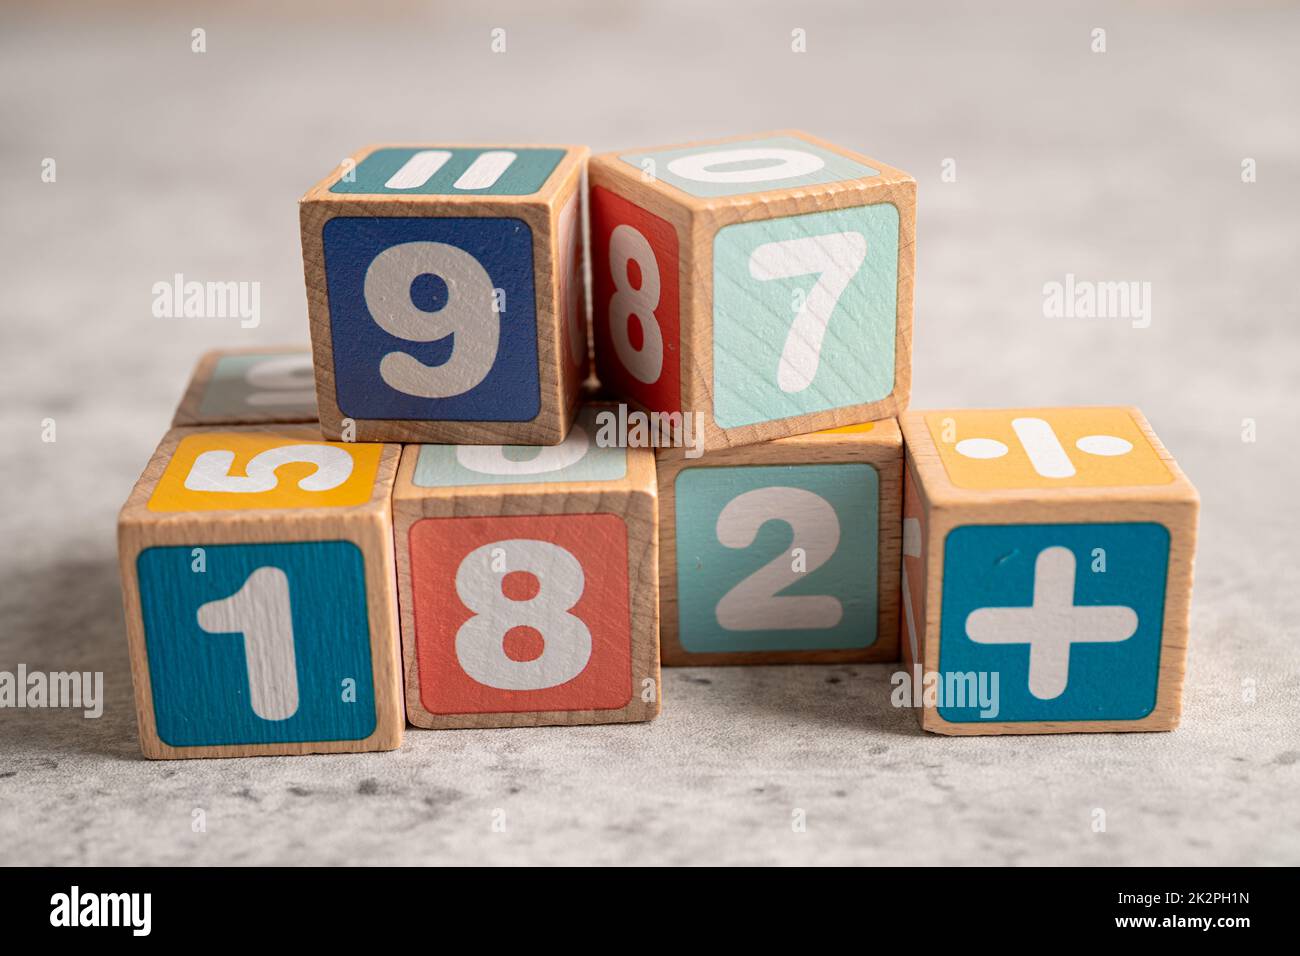 Numéro de mathématiques coloré sur fond blanc, éducation étude mathématiques apprentissage enseigner concept. Banque D'Images